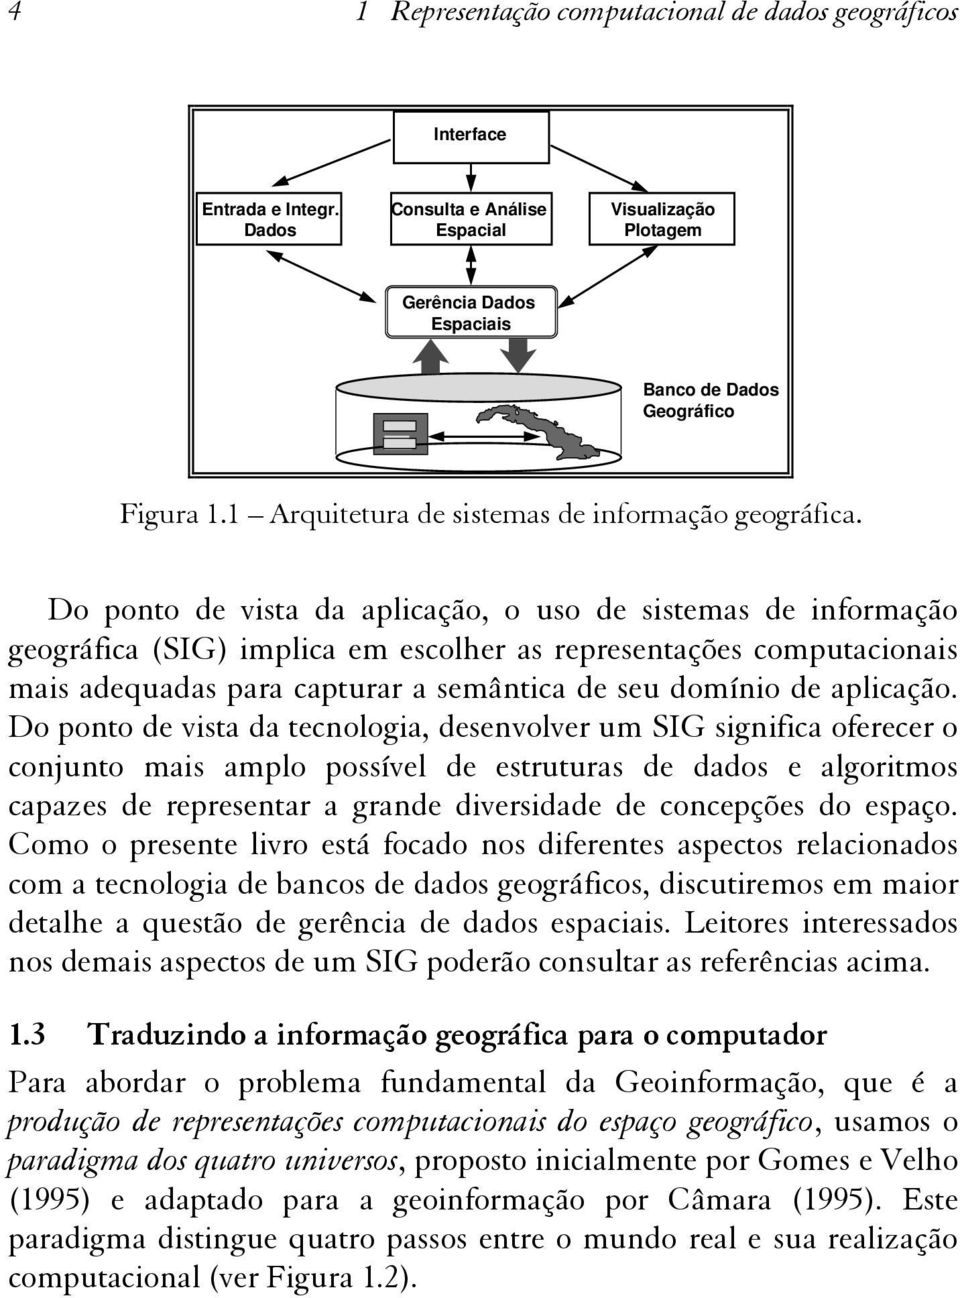 Do ponto de vista da aplicação, o uso de sistemas de informação geográfica (SIG) implica em escolher as representações computacionais mais adequadas para capturar a semântica de seu domínio de